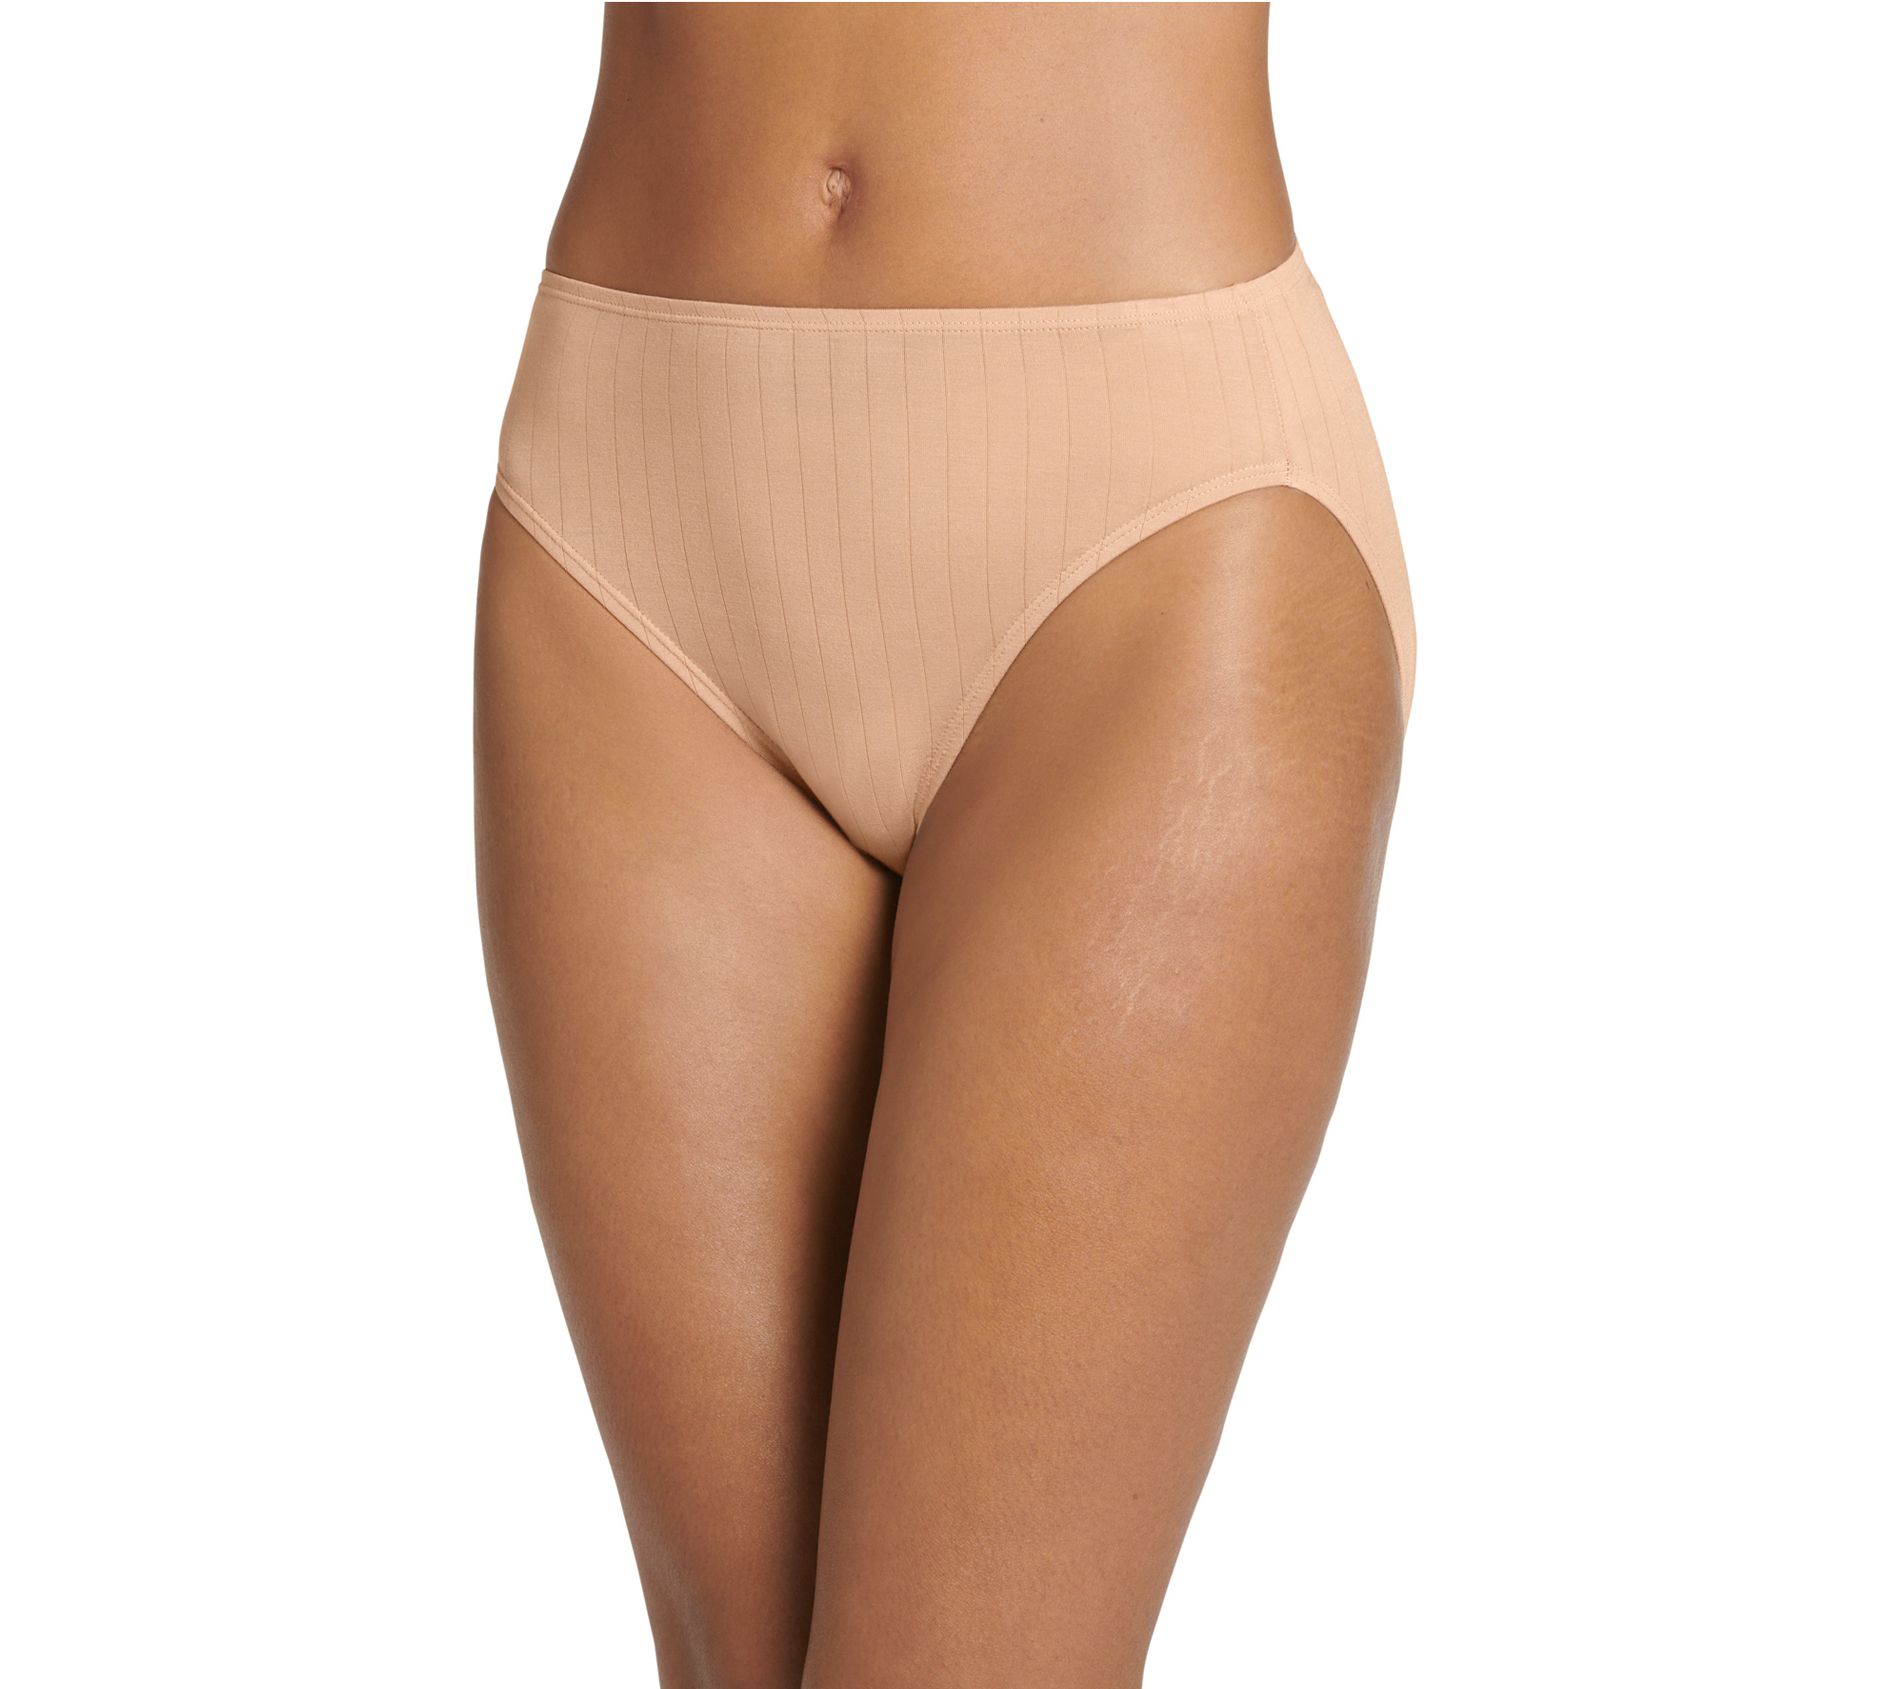 Jockey Women's Underwear Comfies Microfiber French Cut, Light, 6